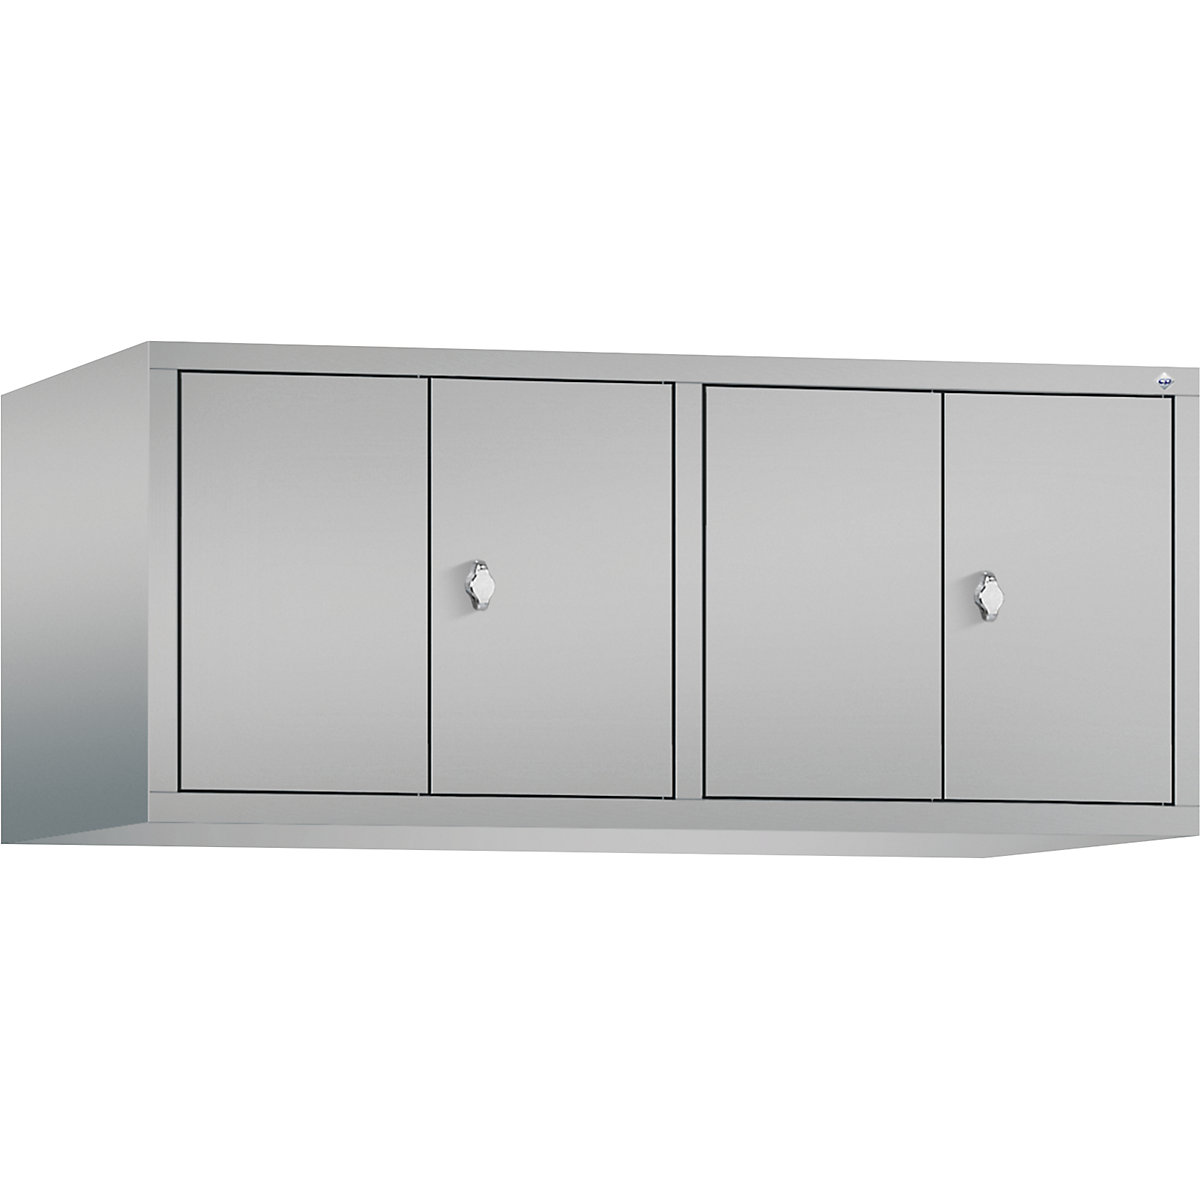 C+P – Altillo CLASSIC, puertas batientes que cierran al ras entre sí, 4 compartimentos, anchura de compartimento 300 mm, aluminio blanco